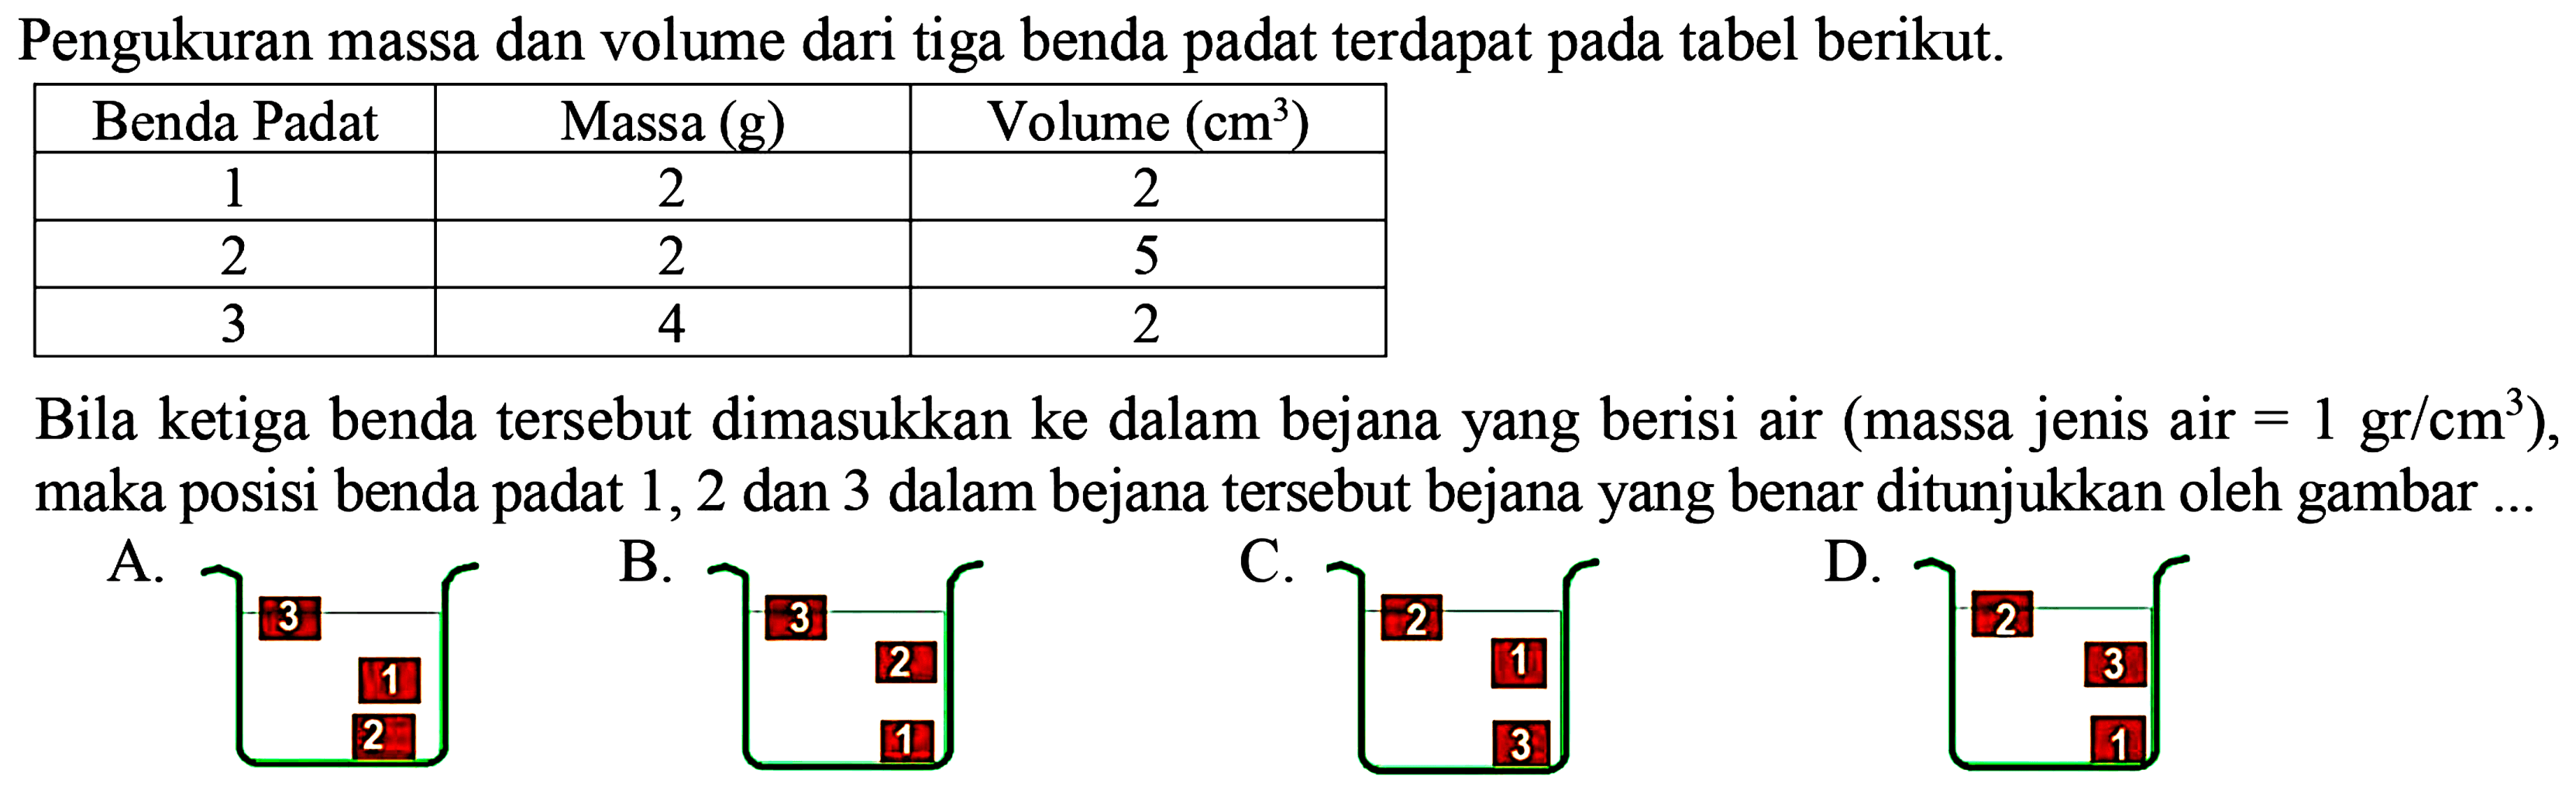 Pengukuran massa dan volume dari tiga benda terdapat padat pada tabel berikut. 
Benda Padat Massa (g) Volume (cm^3) 
1 2 2 
2 2 5 
3 4 2 
Bila ketiga benda tersebut dimasukkan ke dalam bejana yang berisi air (massa jenis air = 1 gr/cm^3),  maka posisi benda padat 1, 2 dan 3 dalam bejana tersebut bejana yang benar ditunjukkan oleh gambar ... 
A. 3 1 2 
B. 3 2 1 
C. 2 1 3 
D. 2 3 1 